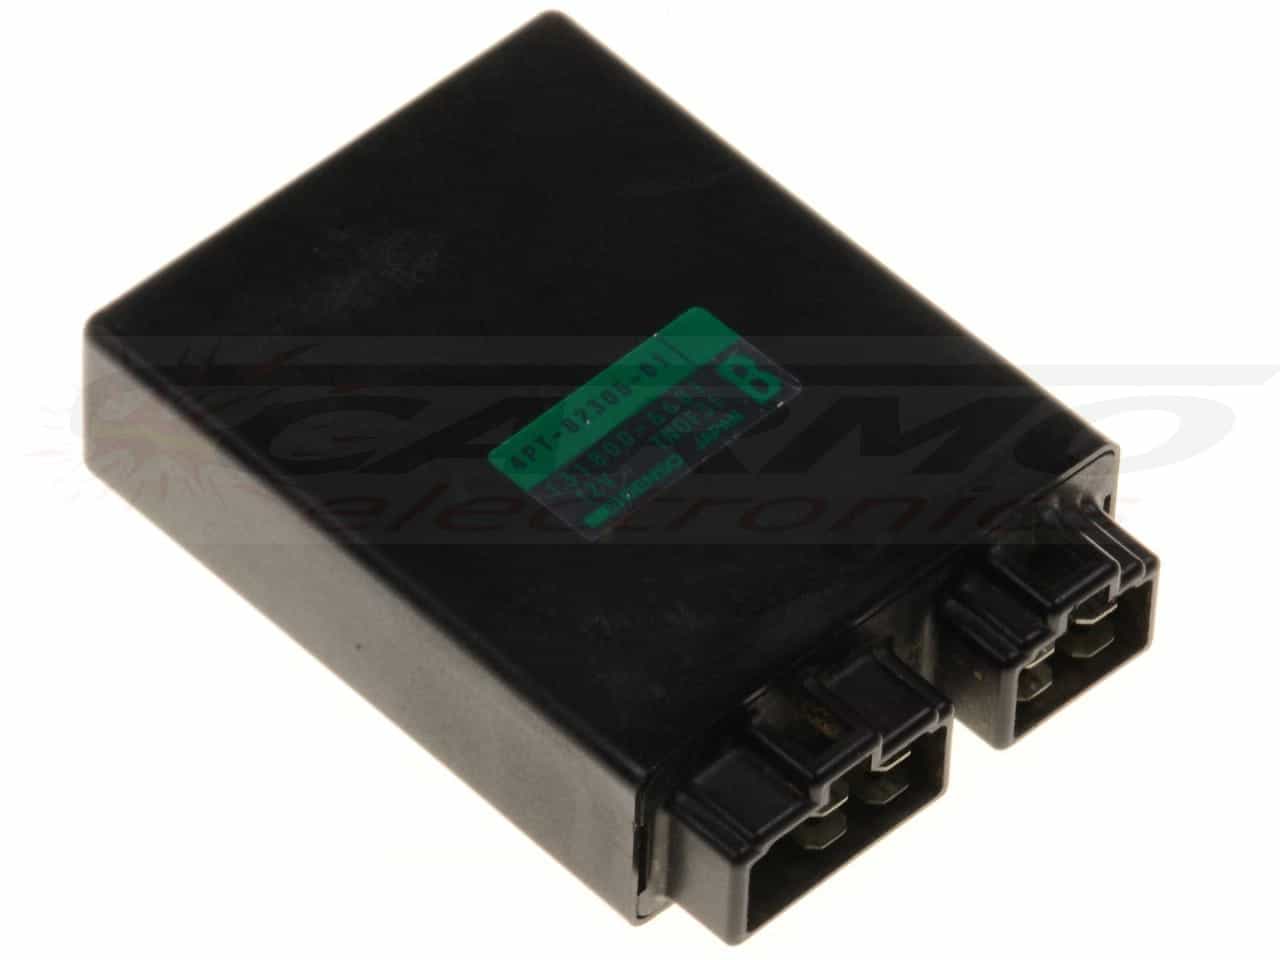 XT600E TCI CDI dispositif de commande boîte noire (4PT-82305-01 / 131800-6681)